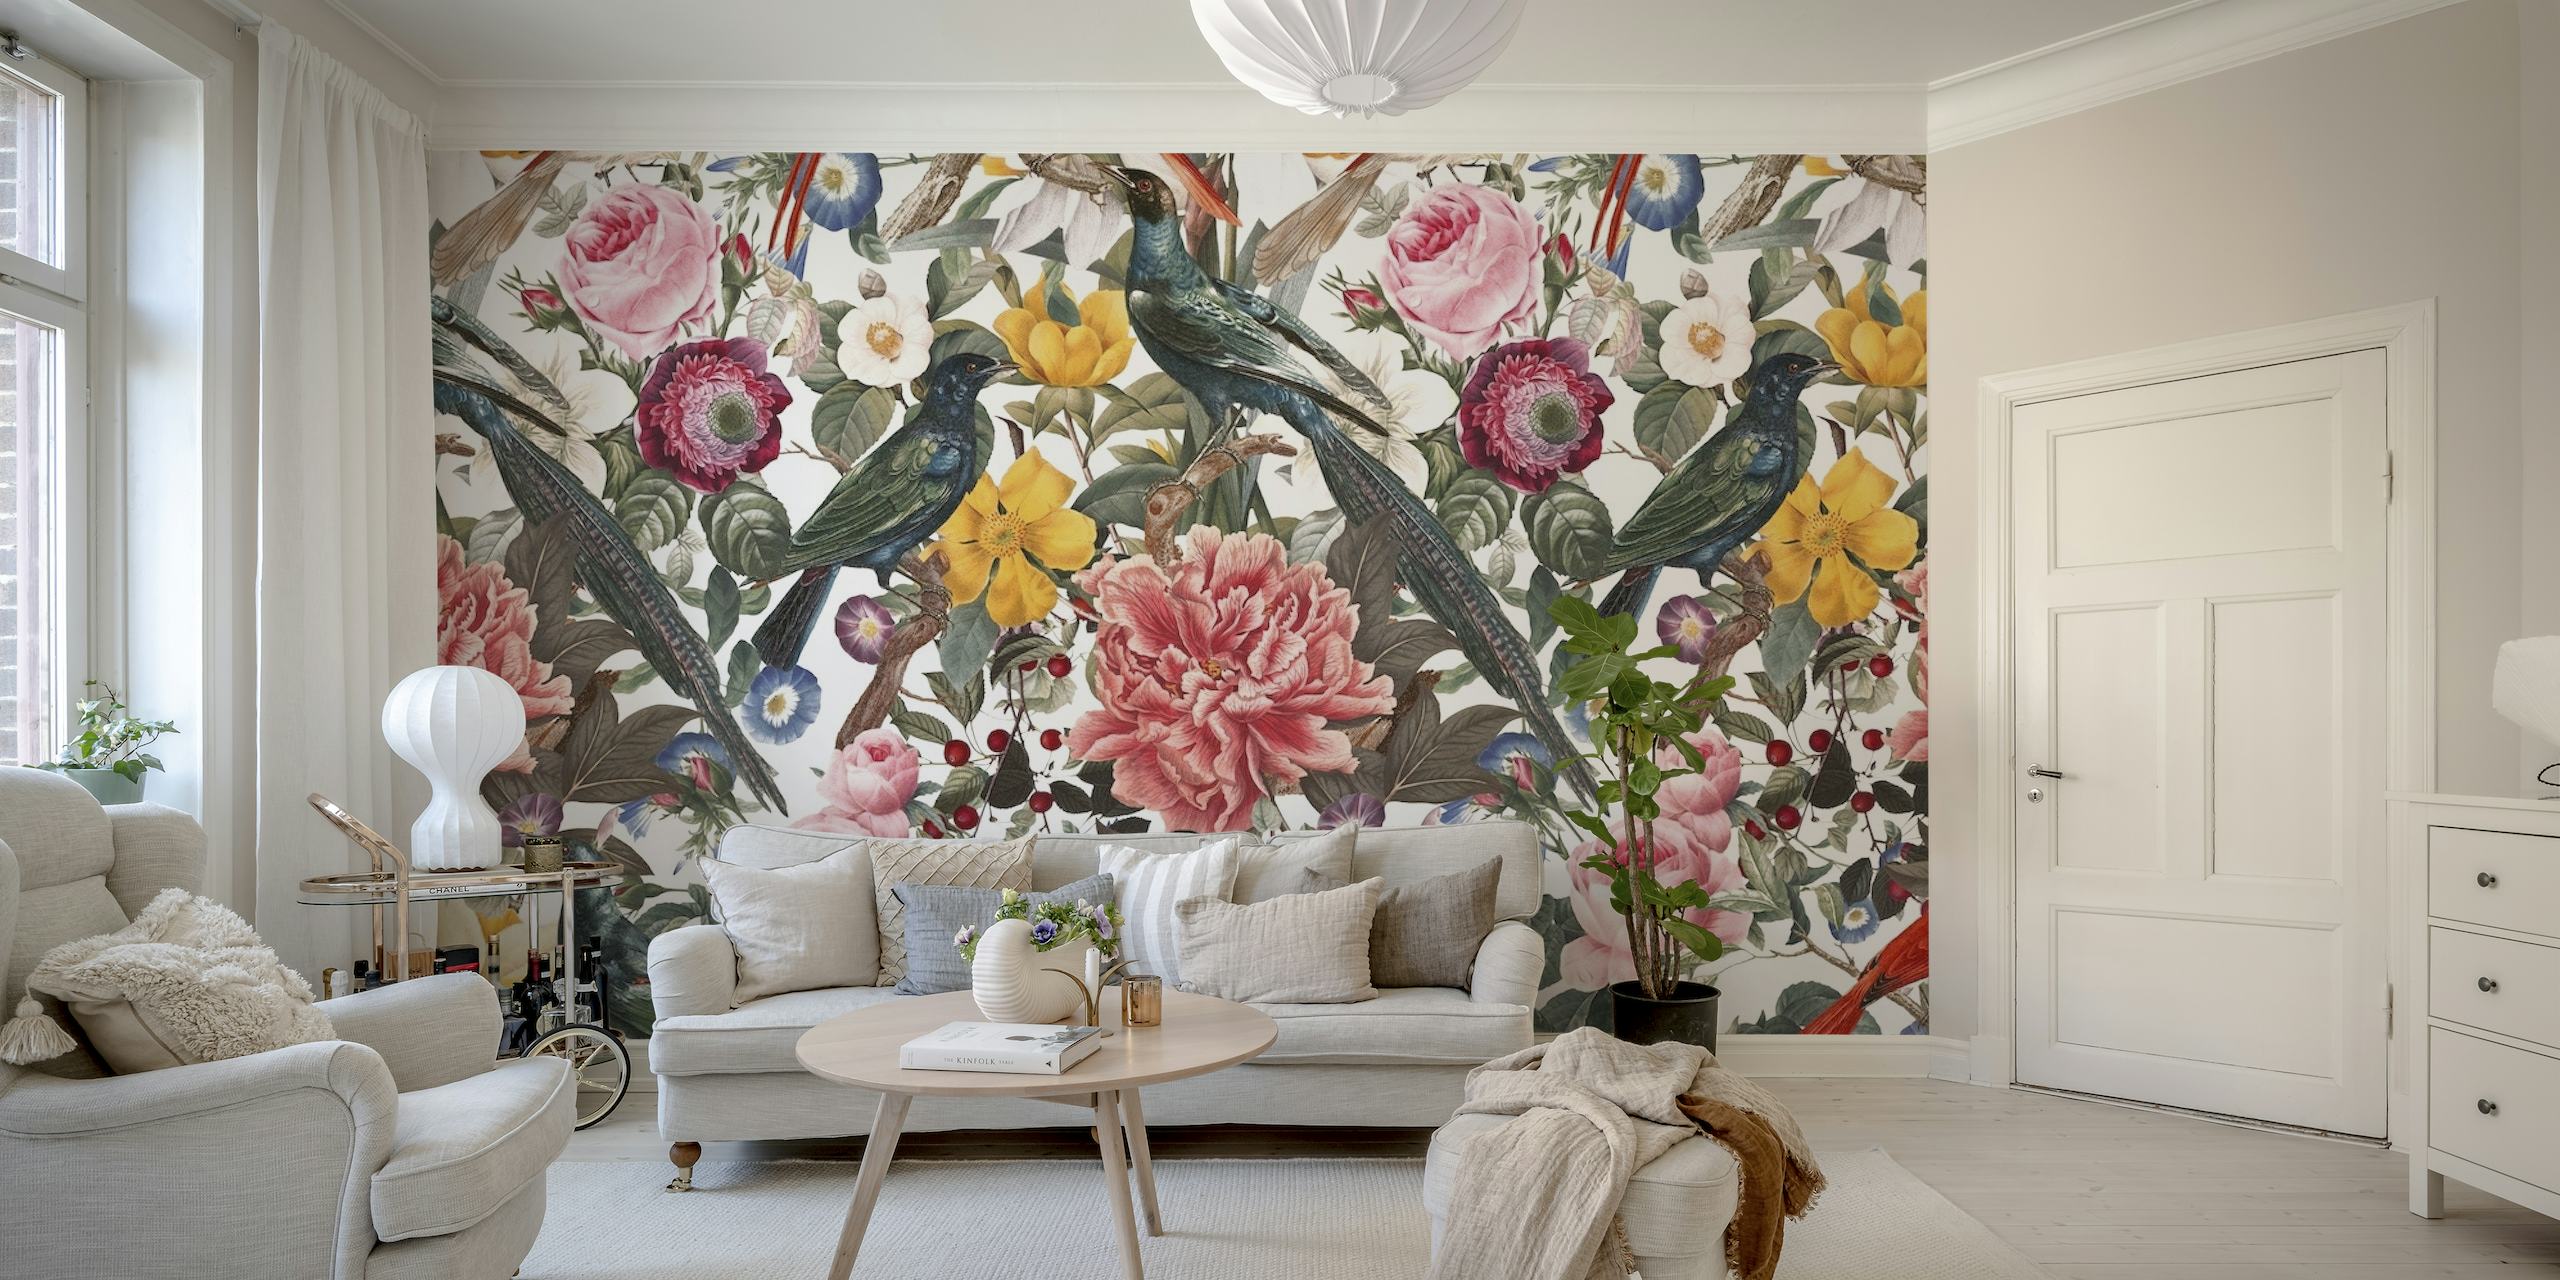 Mural de parede floral e de pássaros com peônias exuberantes e pássaros brincalhões em um fundo suave